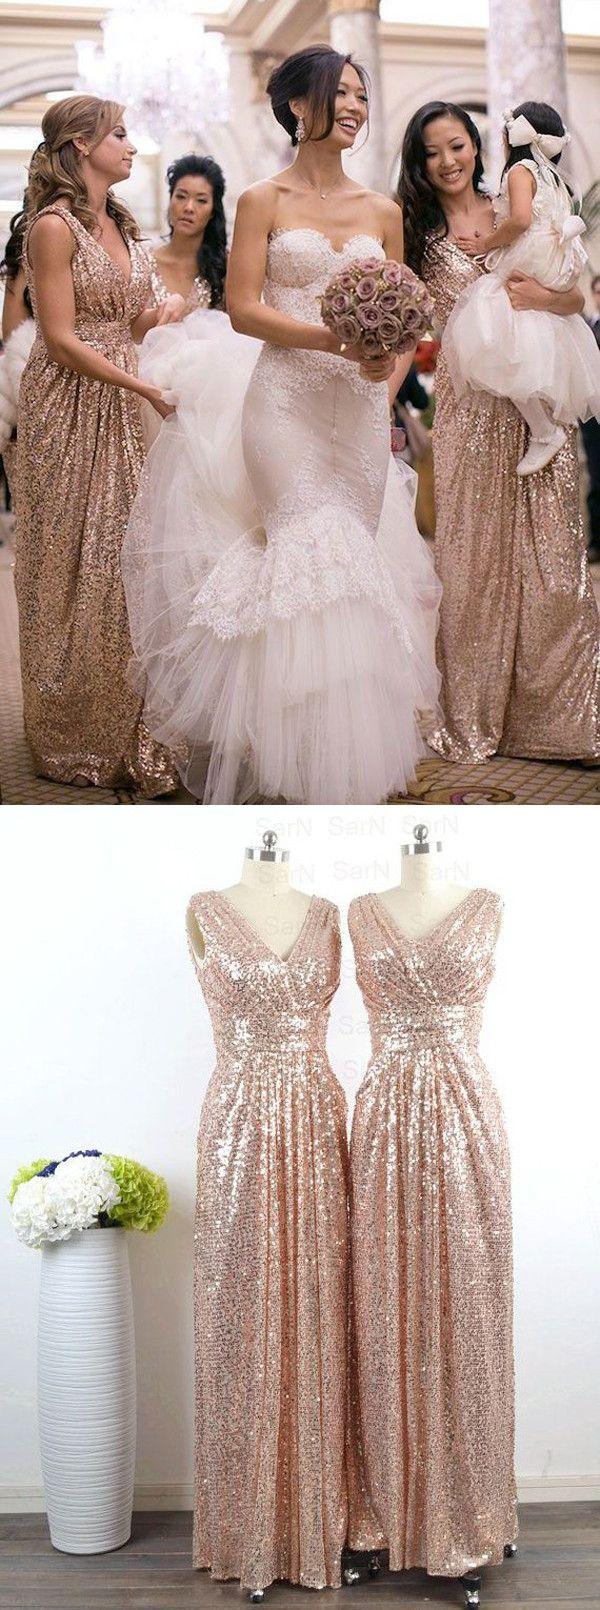 Wedding - Glamorous Gown